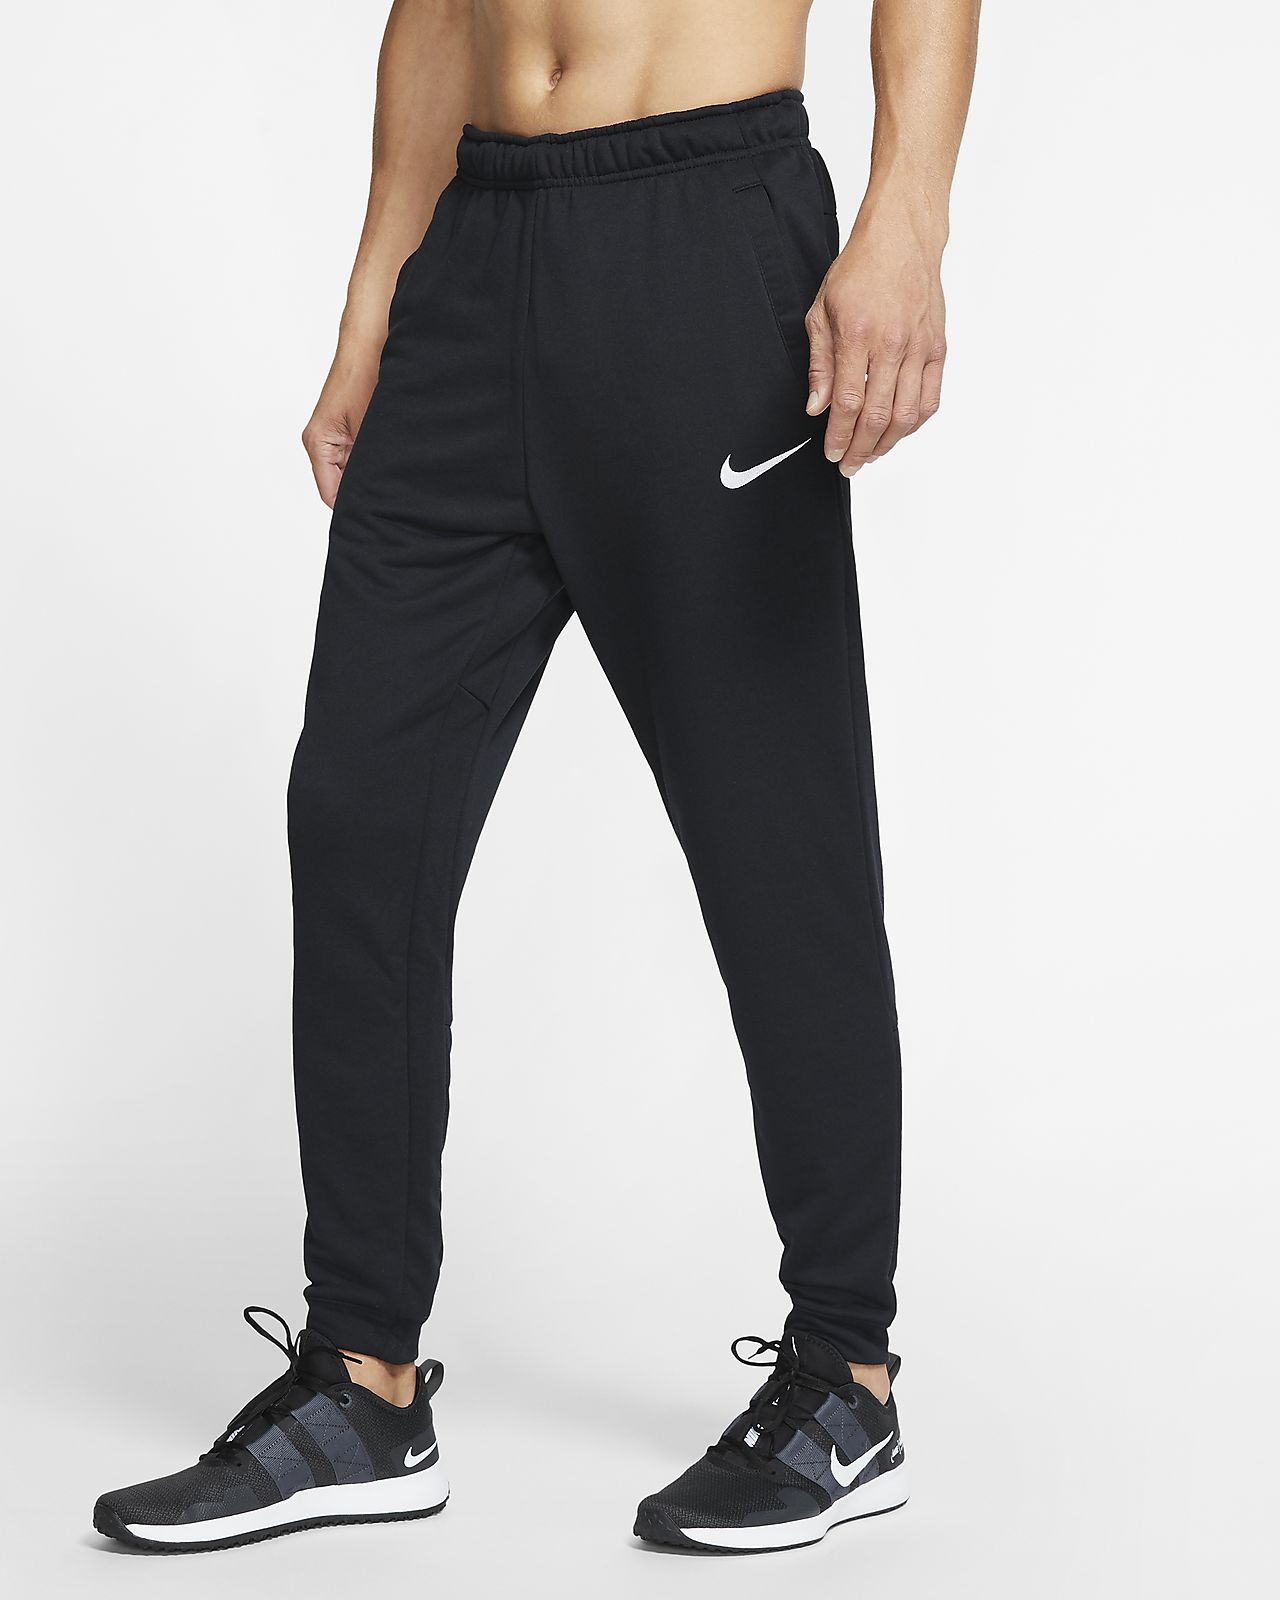 Nike Dri-FIT Men's Tapered Fleece Training Pants. Nike.com